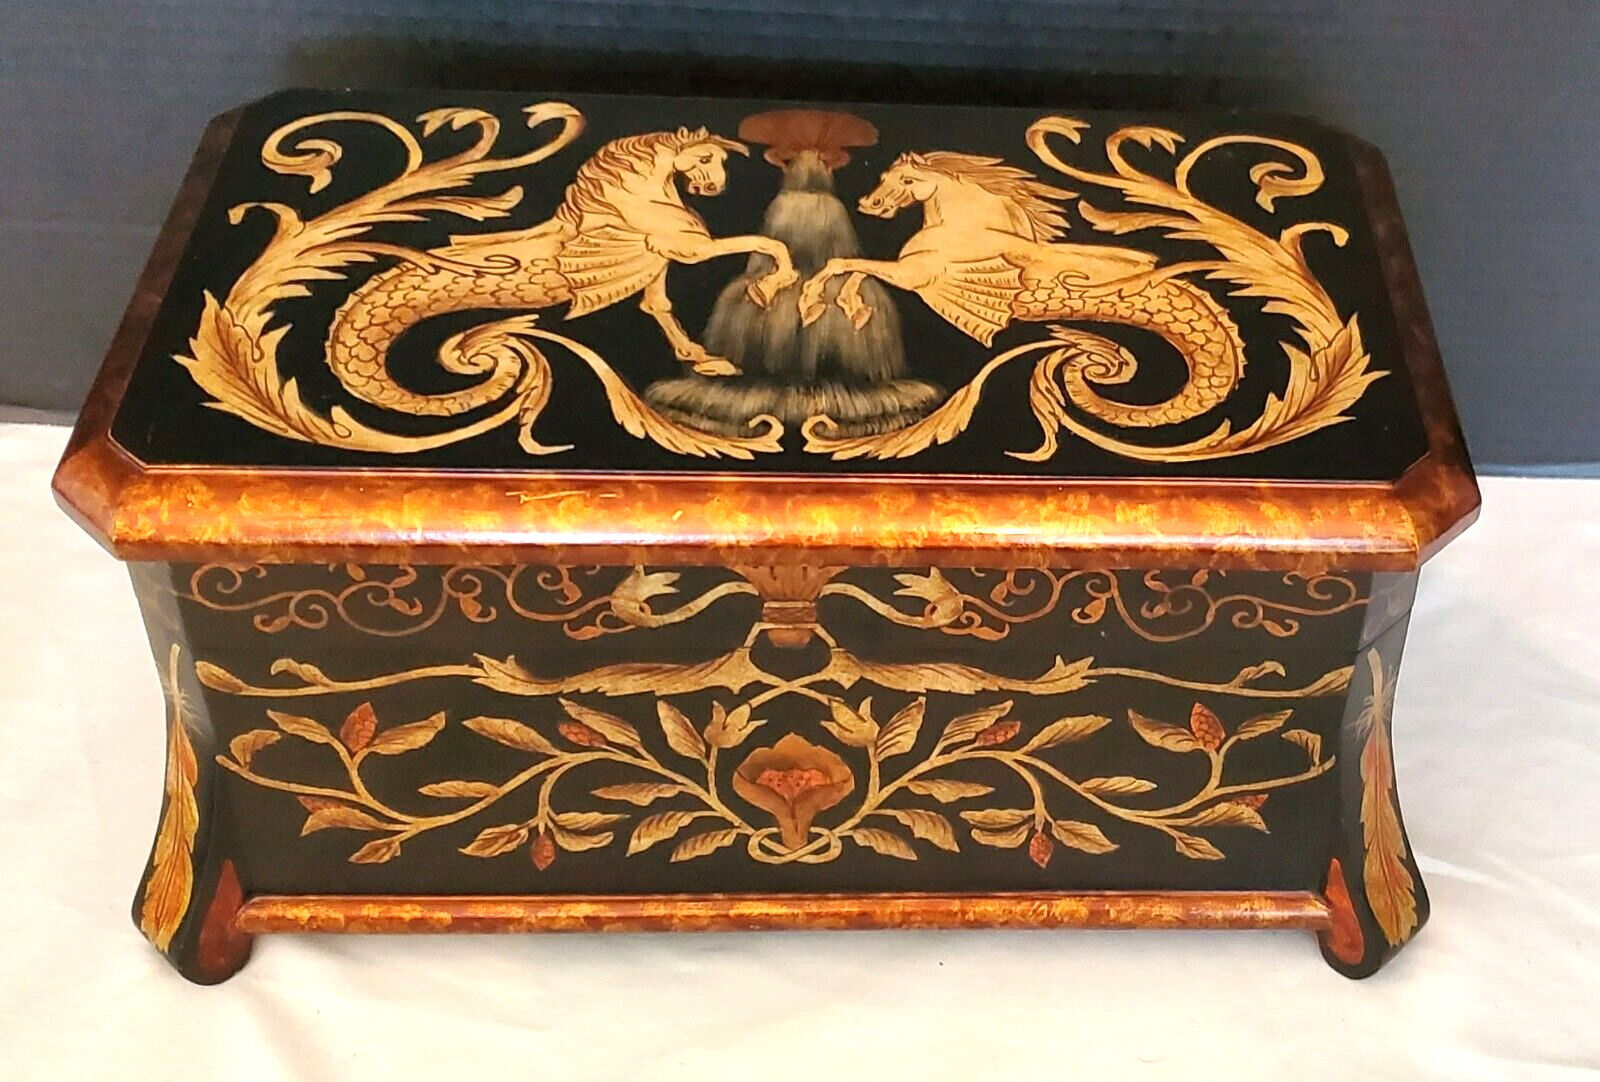 CASTILIAN Import Hinged Wood Keepsake Box, Hand Painted Hippocampus Mythology